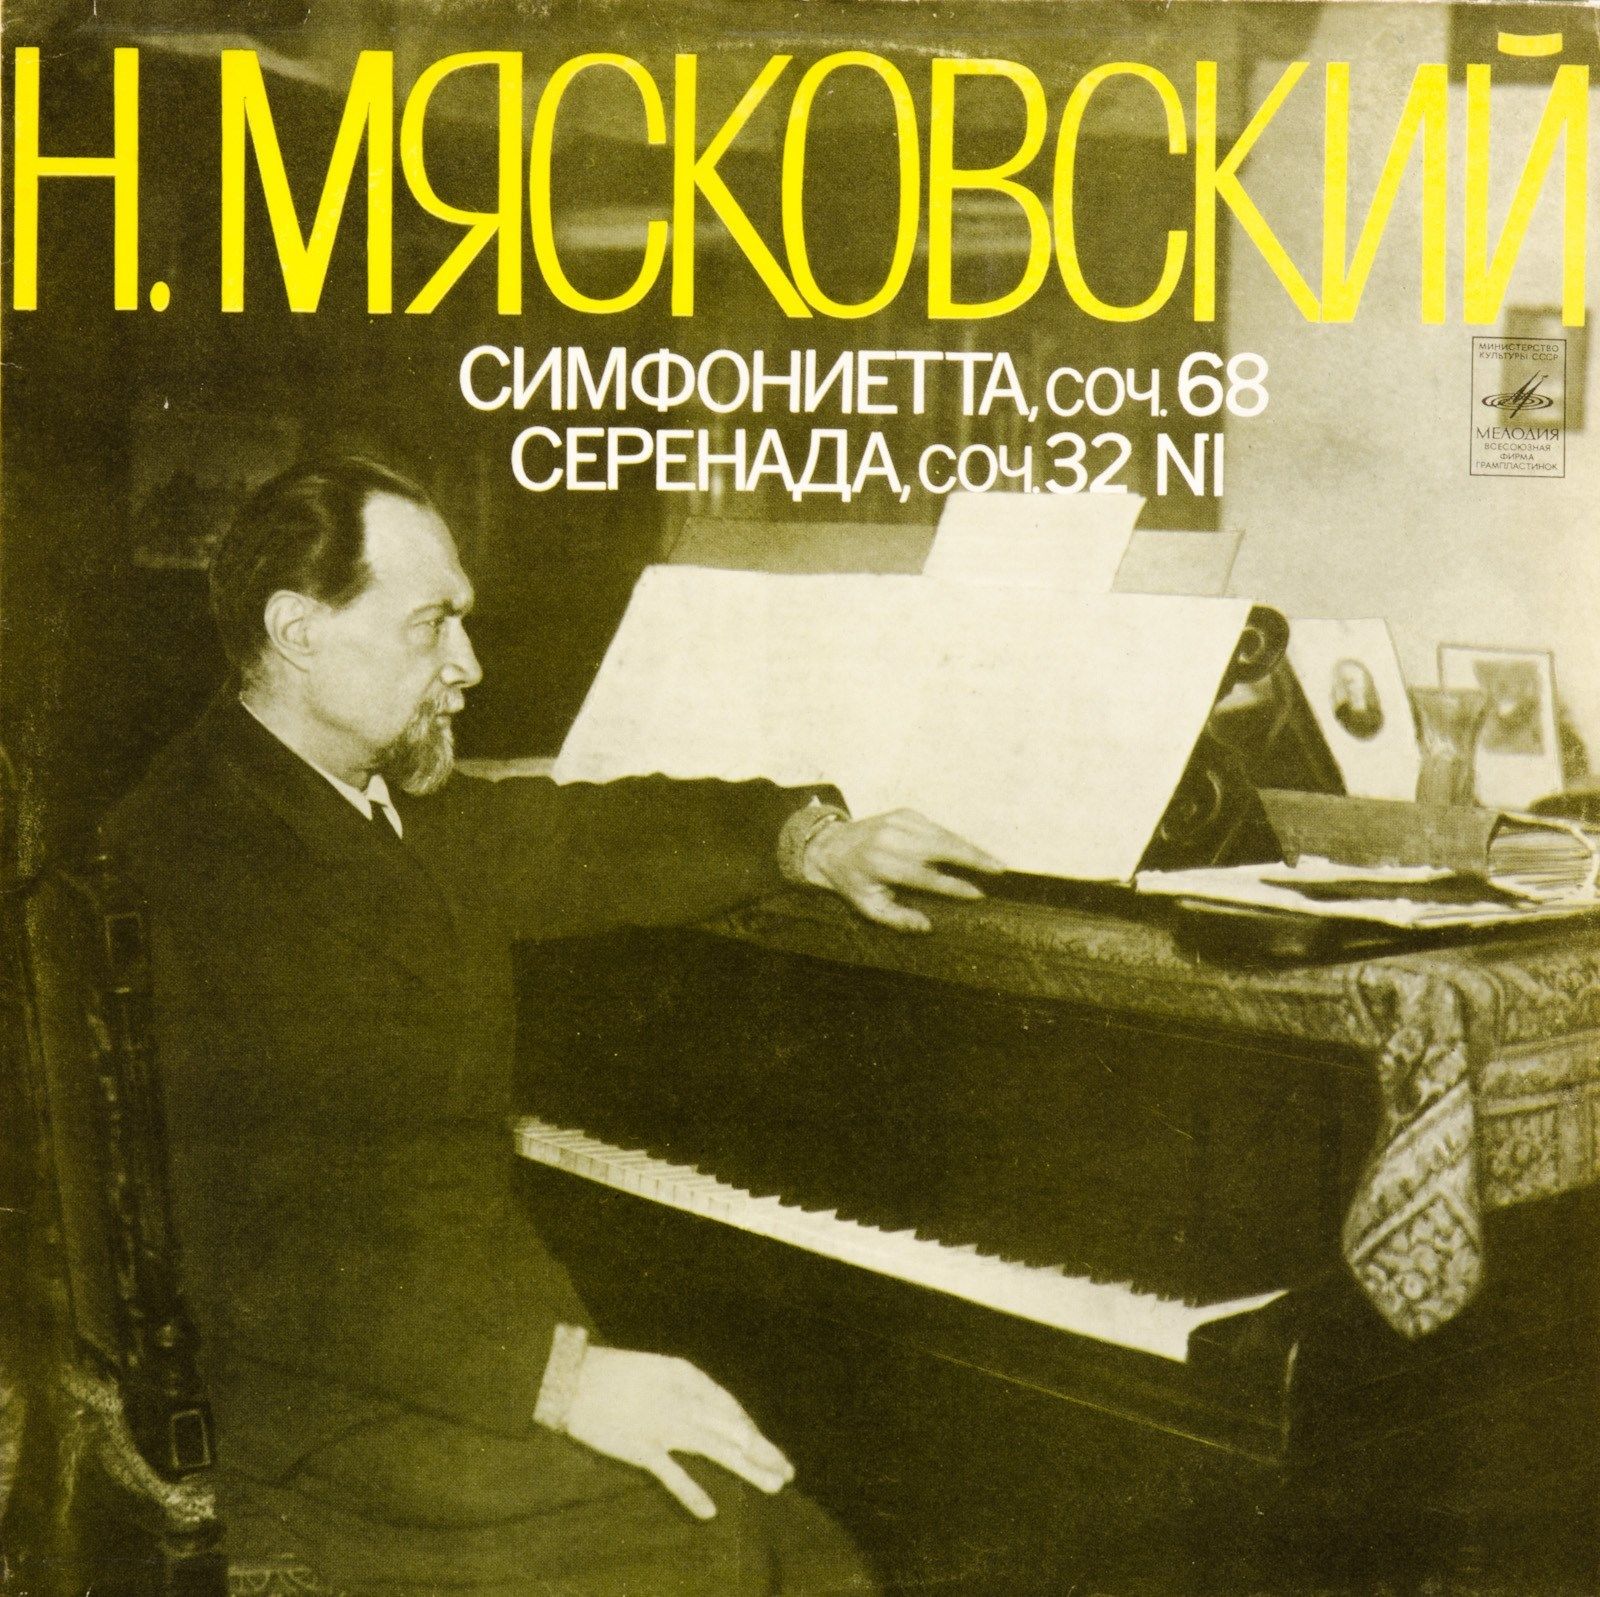 Н. МЯСКОВСКИЙ (1881-1950): Симфониетта, соч. 68 / Серенада, соч. 32 №1